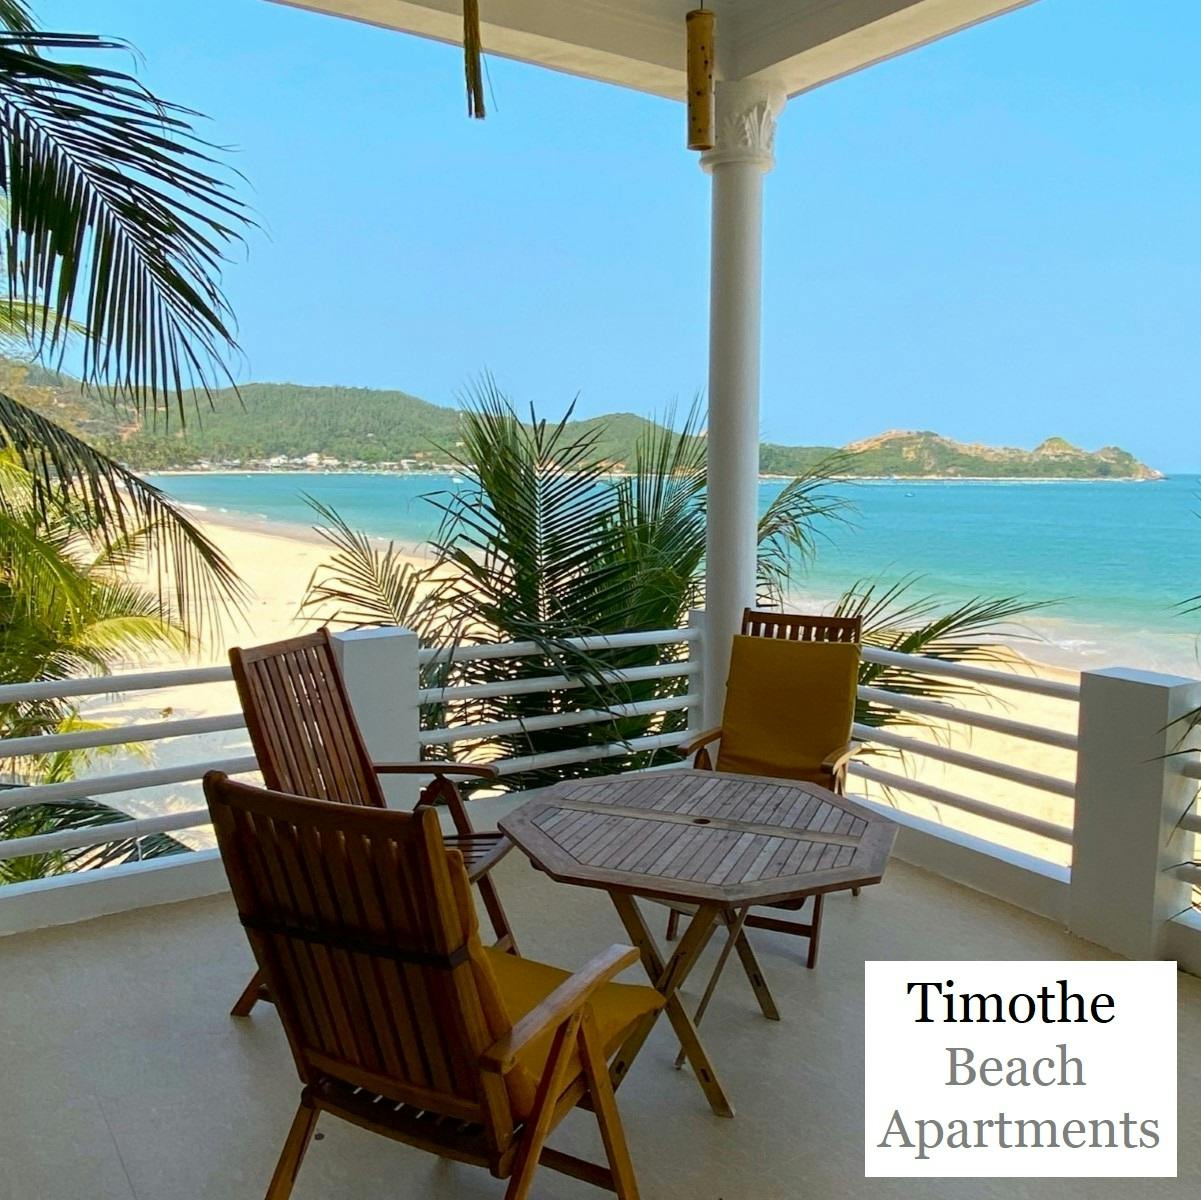 Timothe Beach Apartments, Vịnh Hòa, Phú Yên, Review